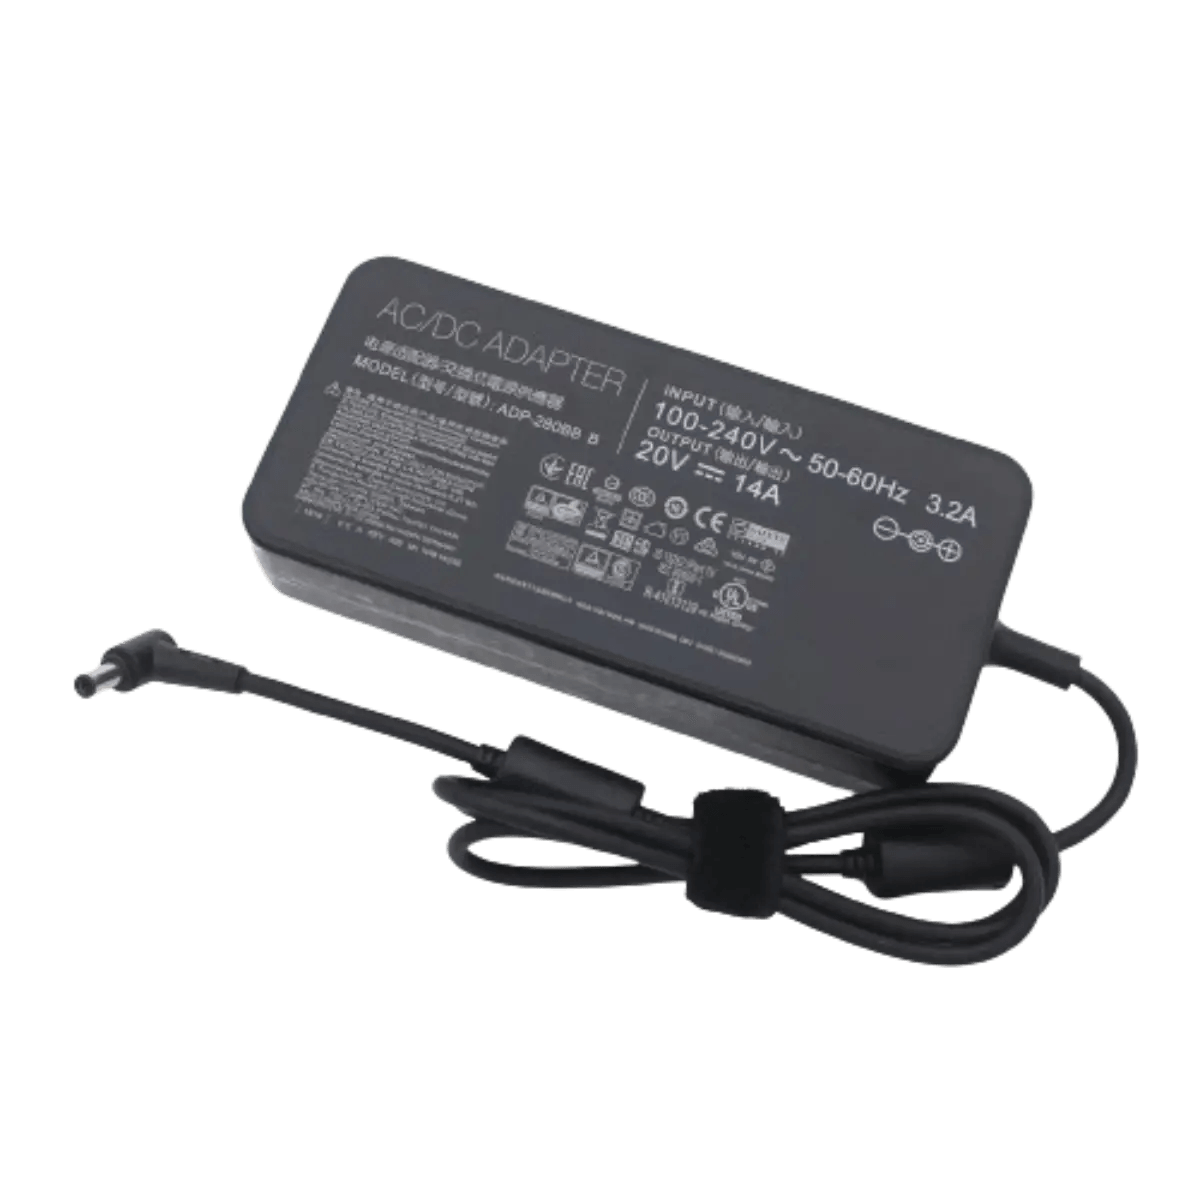 Chargeur ordinateur portable Asus 20V 14A 280W